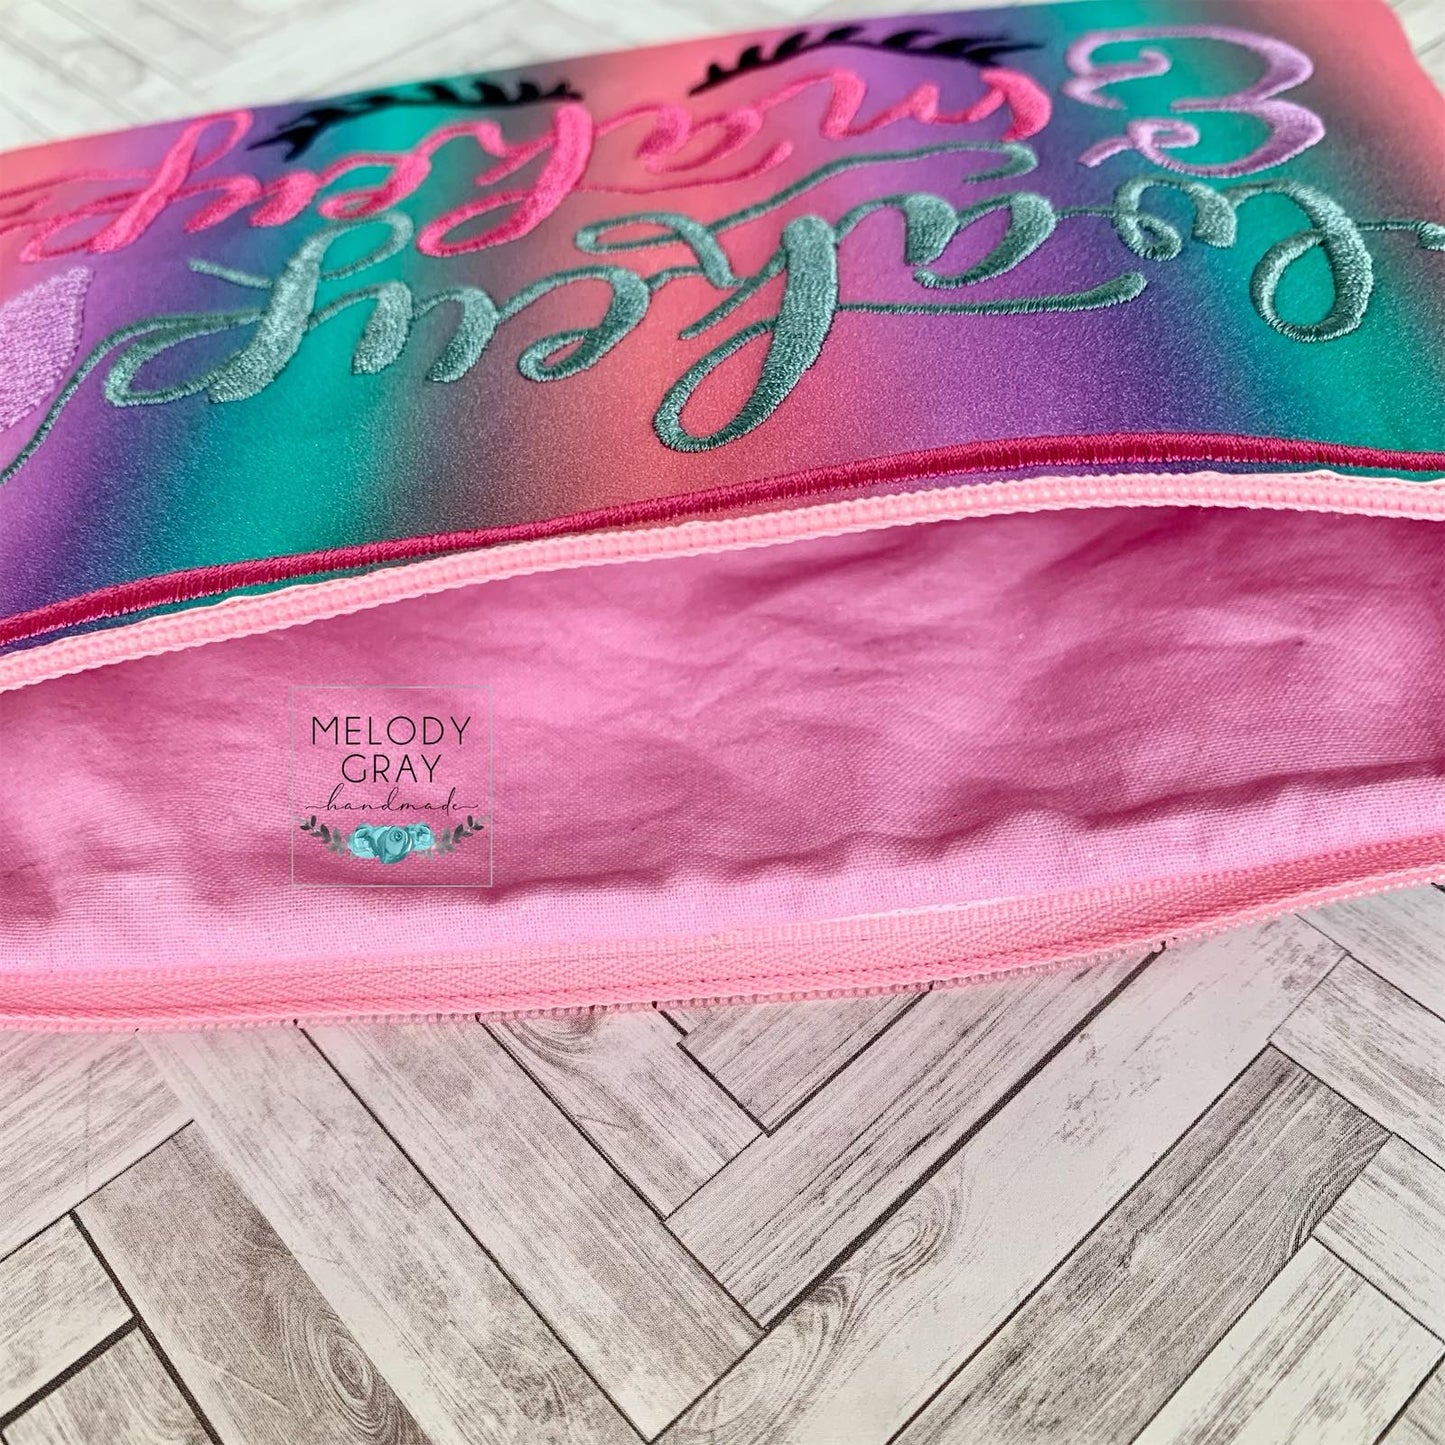 Wakeup and Makeup Zipper Bag - 2 sizes - Digital Embroidery Design